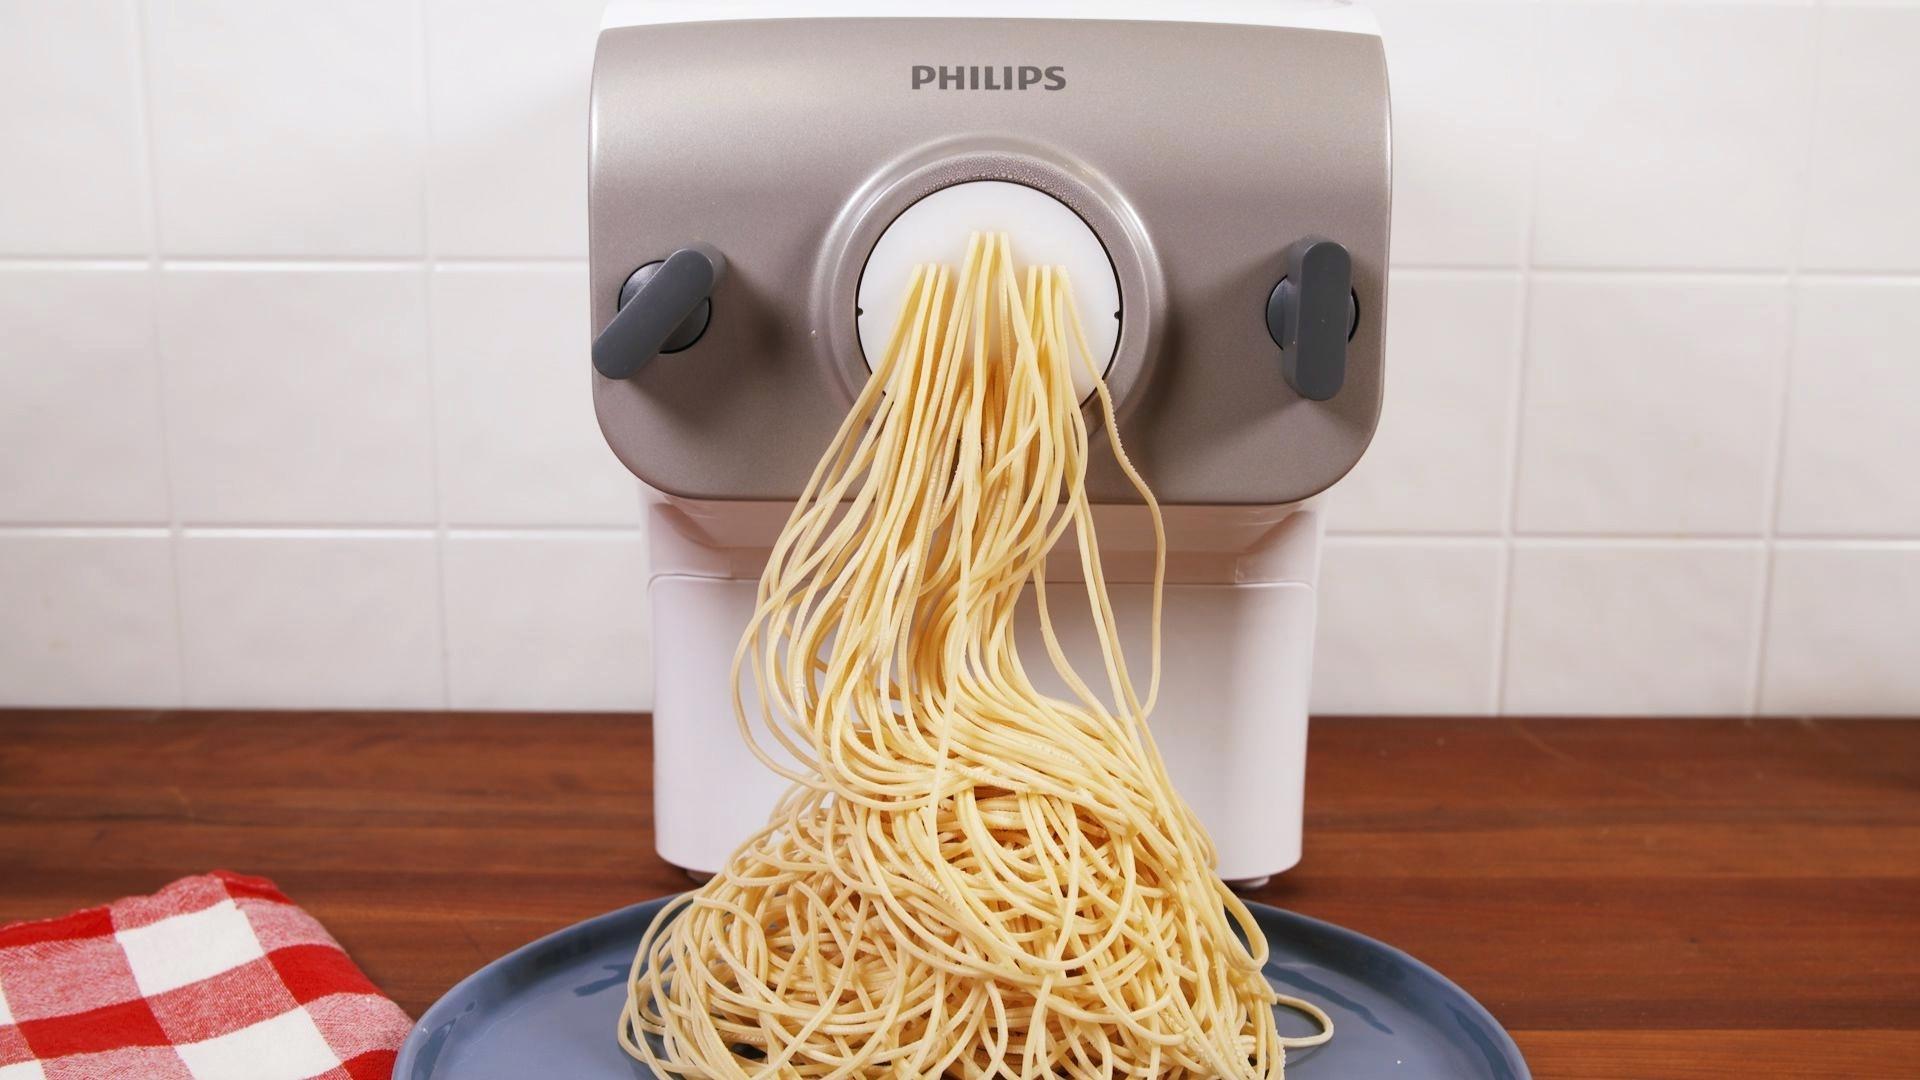 Hasil gambar untuk philips noodle